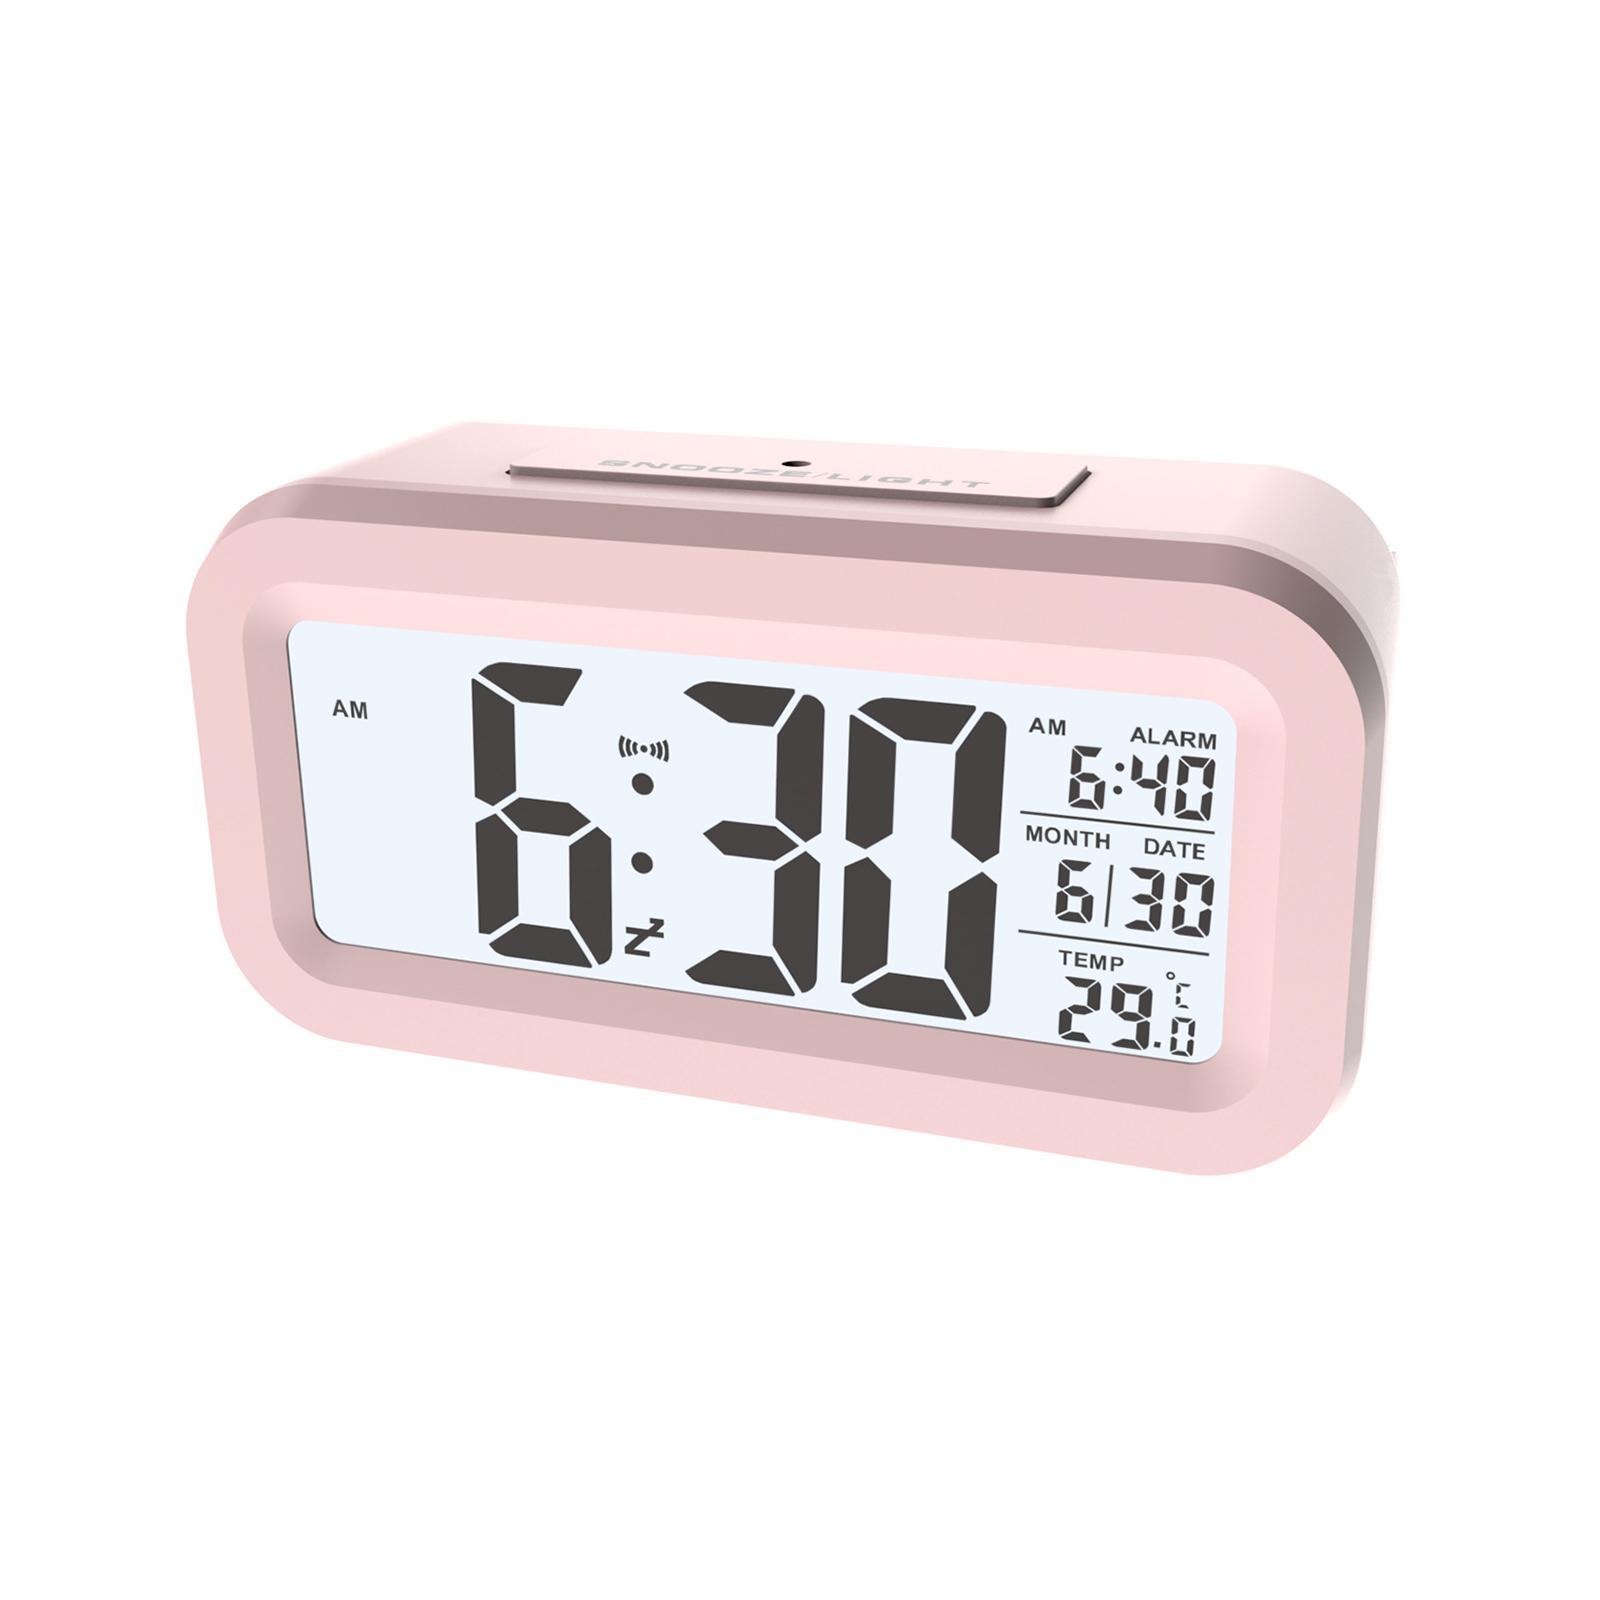 Digital Alarm Clock with Indoor Temperature Date Desk Clock Mute Clock for Study Room Bedroom NightStand Office Bedside